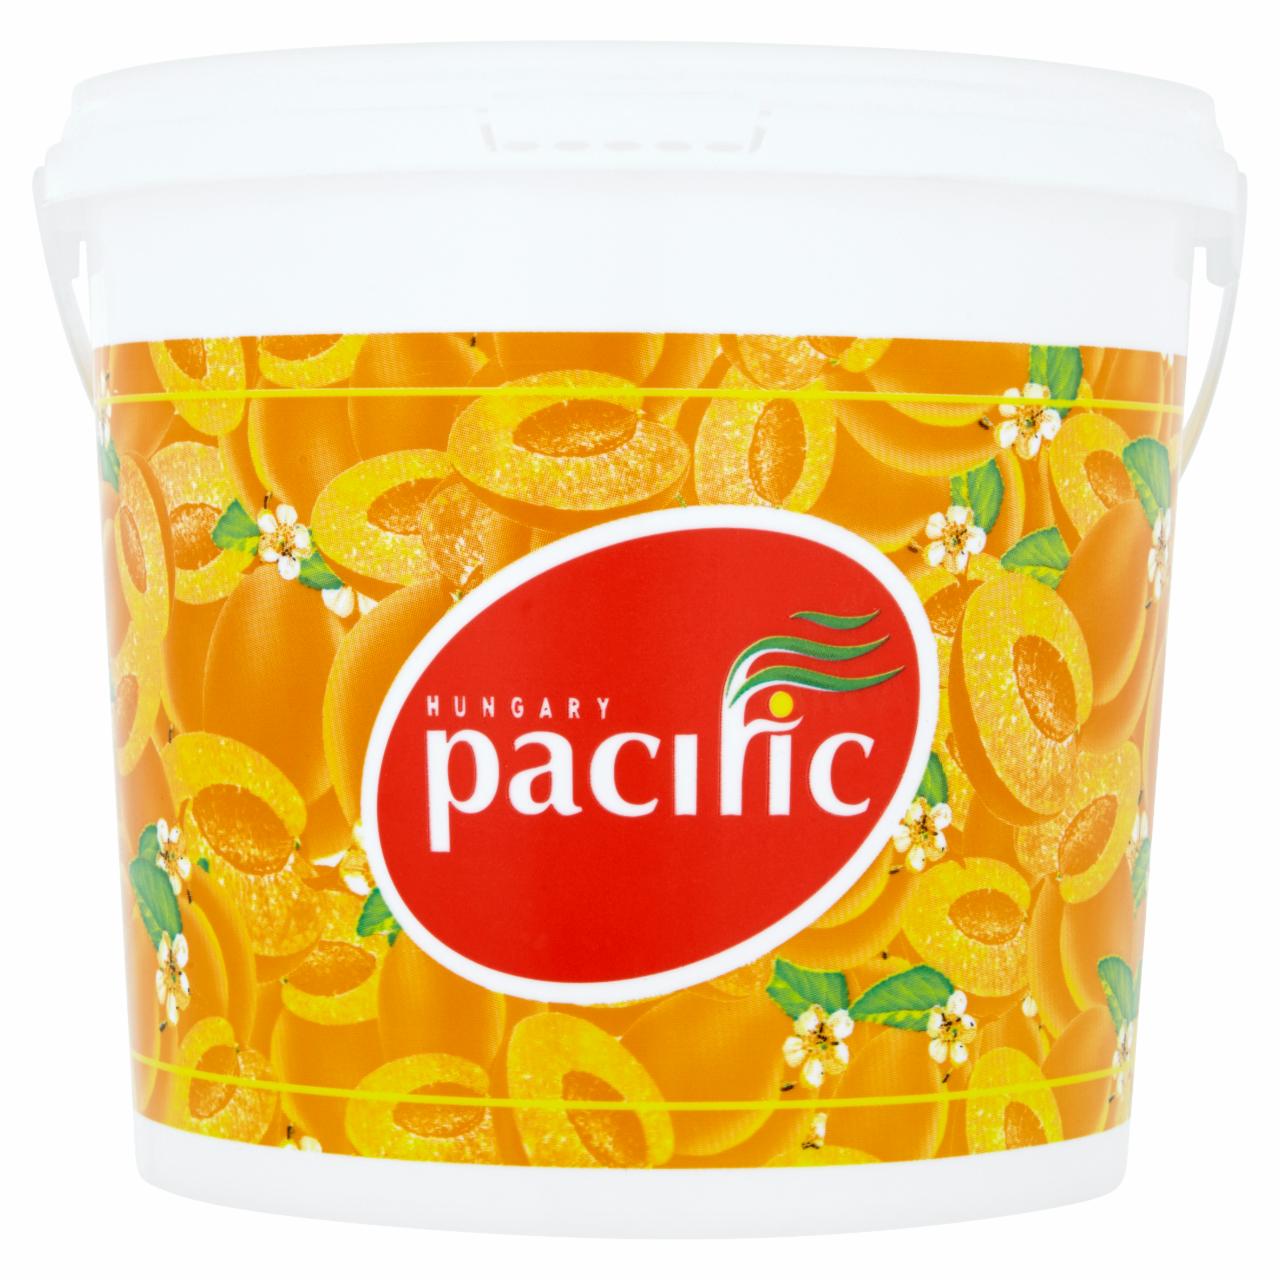 Képek - Pacific sárgabarack extradzsem háziasszony módra 3250 g